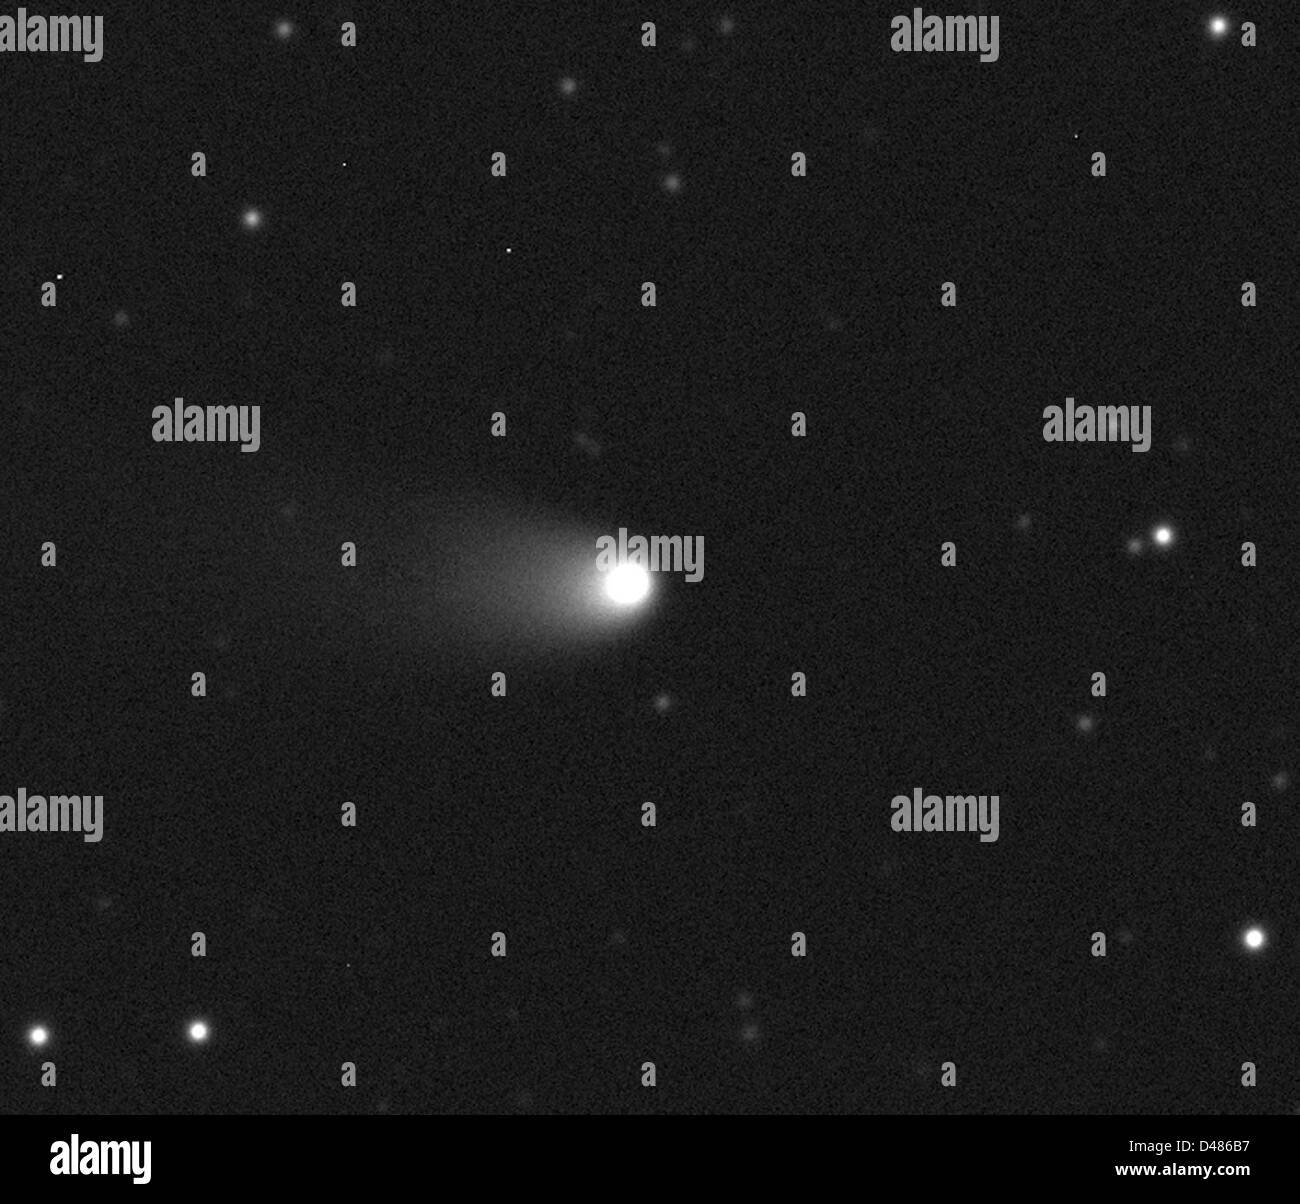 HANDOUT - beobachtet ein Foto zeigt den Comet 2011 L4 (Pan-STARRS) auf 2012 August 9 vom britischen Astronomen Apostolos Christou und David Asher (Armagh Observatory, Nordirland) und Student James Hadnett (Royal School Armagh) am Siding Spring, Australien in Zusammenarbeit mit dem Faulkes Teleskop-Projekt. Die Bilder wurden mit Faulkes Teleskop südlich von Las Cumbres Observatorium Teleskop Netzwerk betrieben. Erde bekommen summte durch zwei Kometen im Jahr 2013 erscheint die erste Pan-STARRS, am hellsten zwischen 8 bis 13 März.  FOTO/LAS CUMBRES OBSERVATORIUM Stockfoto